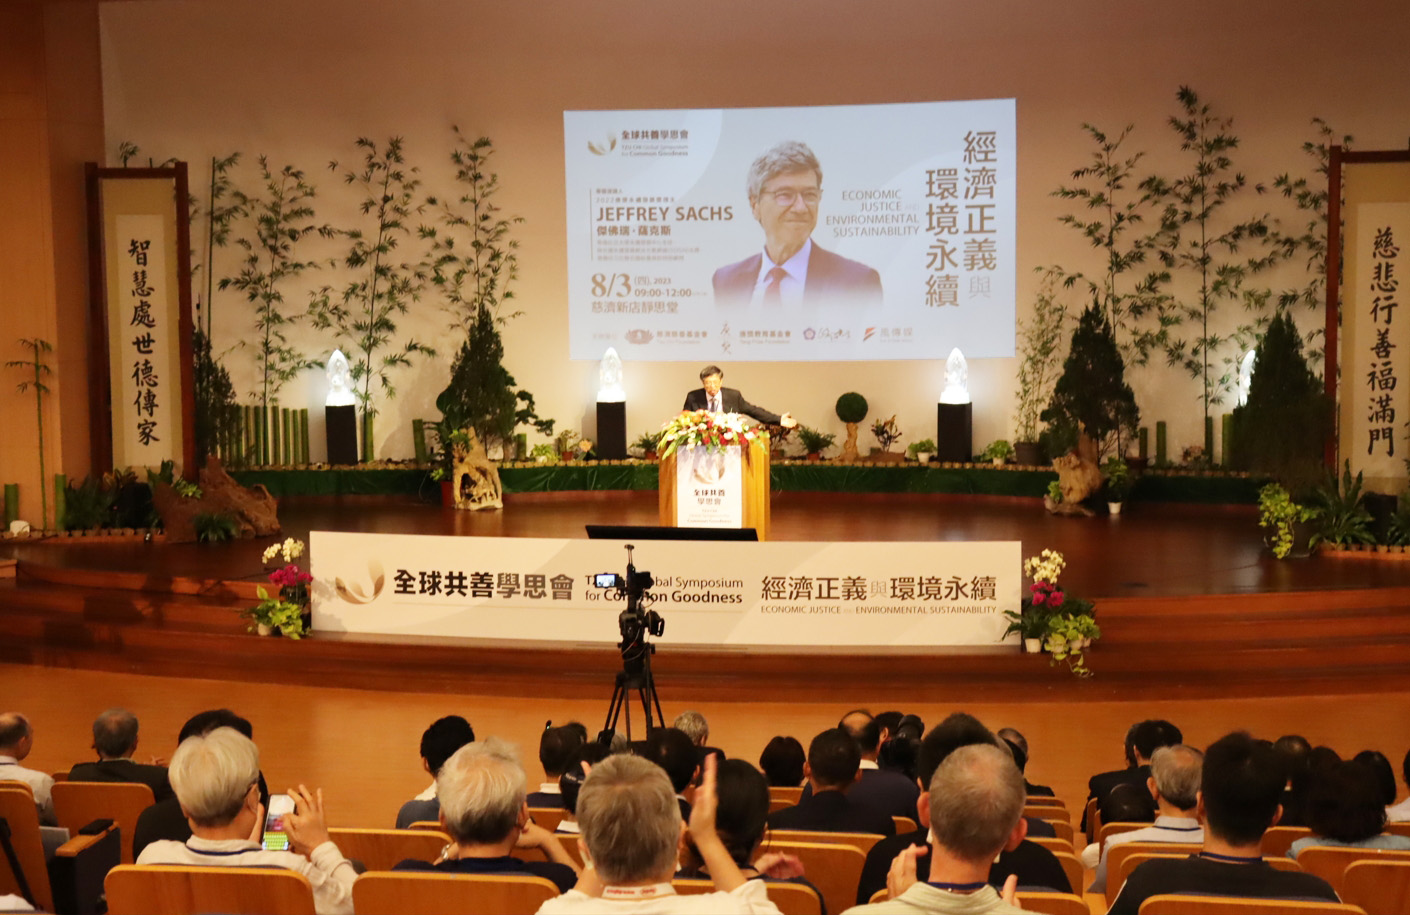 慈濟基金會8月3日上午在新店靜思堂(慈濟臺北分會)舉辦「第八屆全球共善學思會：經濟正義與環境永續」。